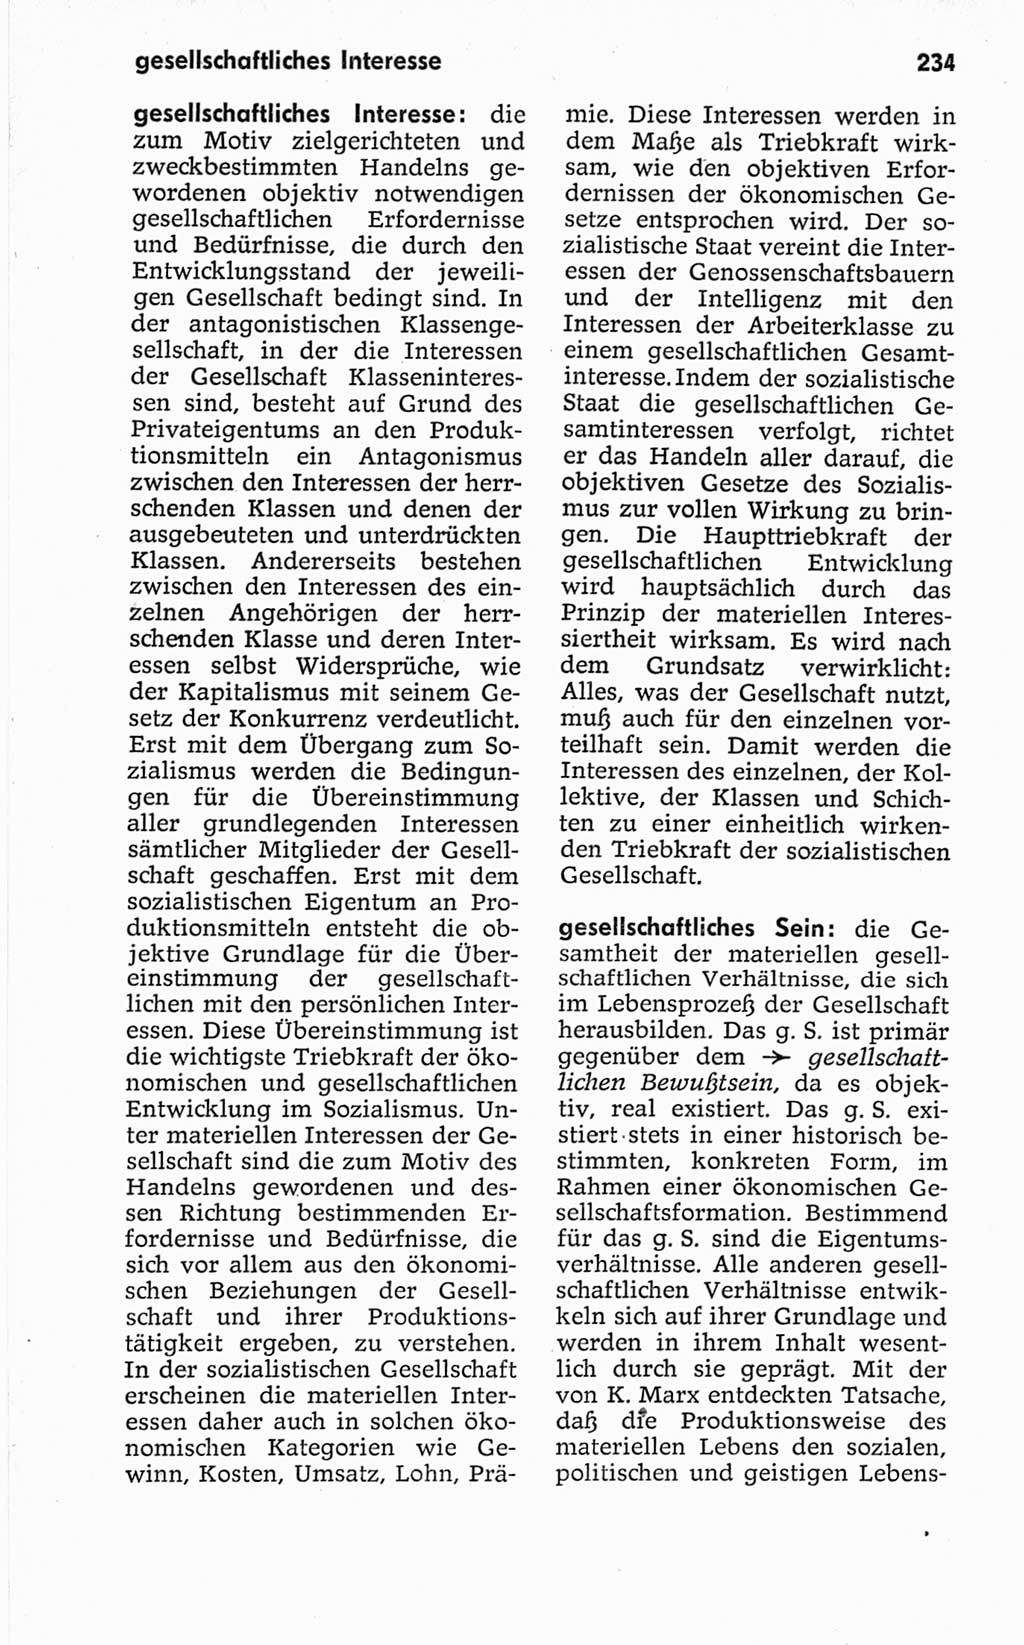 Kleines politisches Wörterbuch [Deutsche Demokratische Republik (DDR)] 1967, Seite 234 (Kl. pol. Wb. DDR 1967, S. 234)